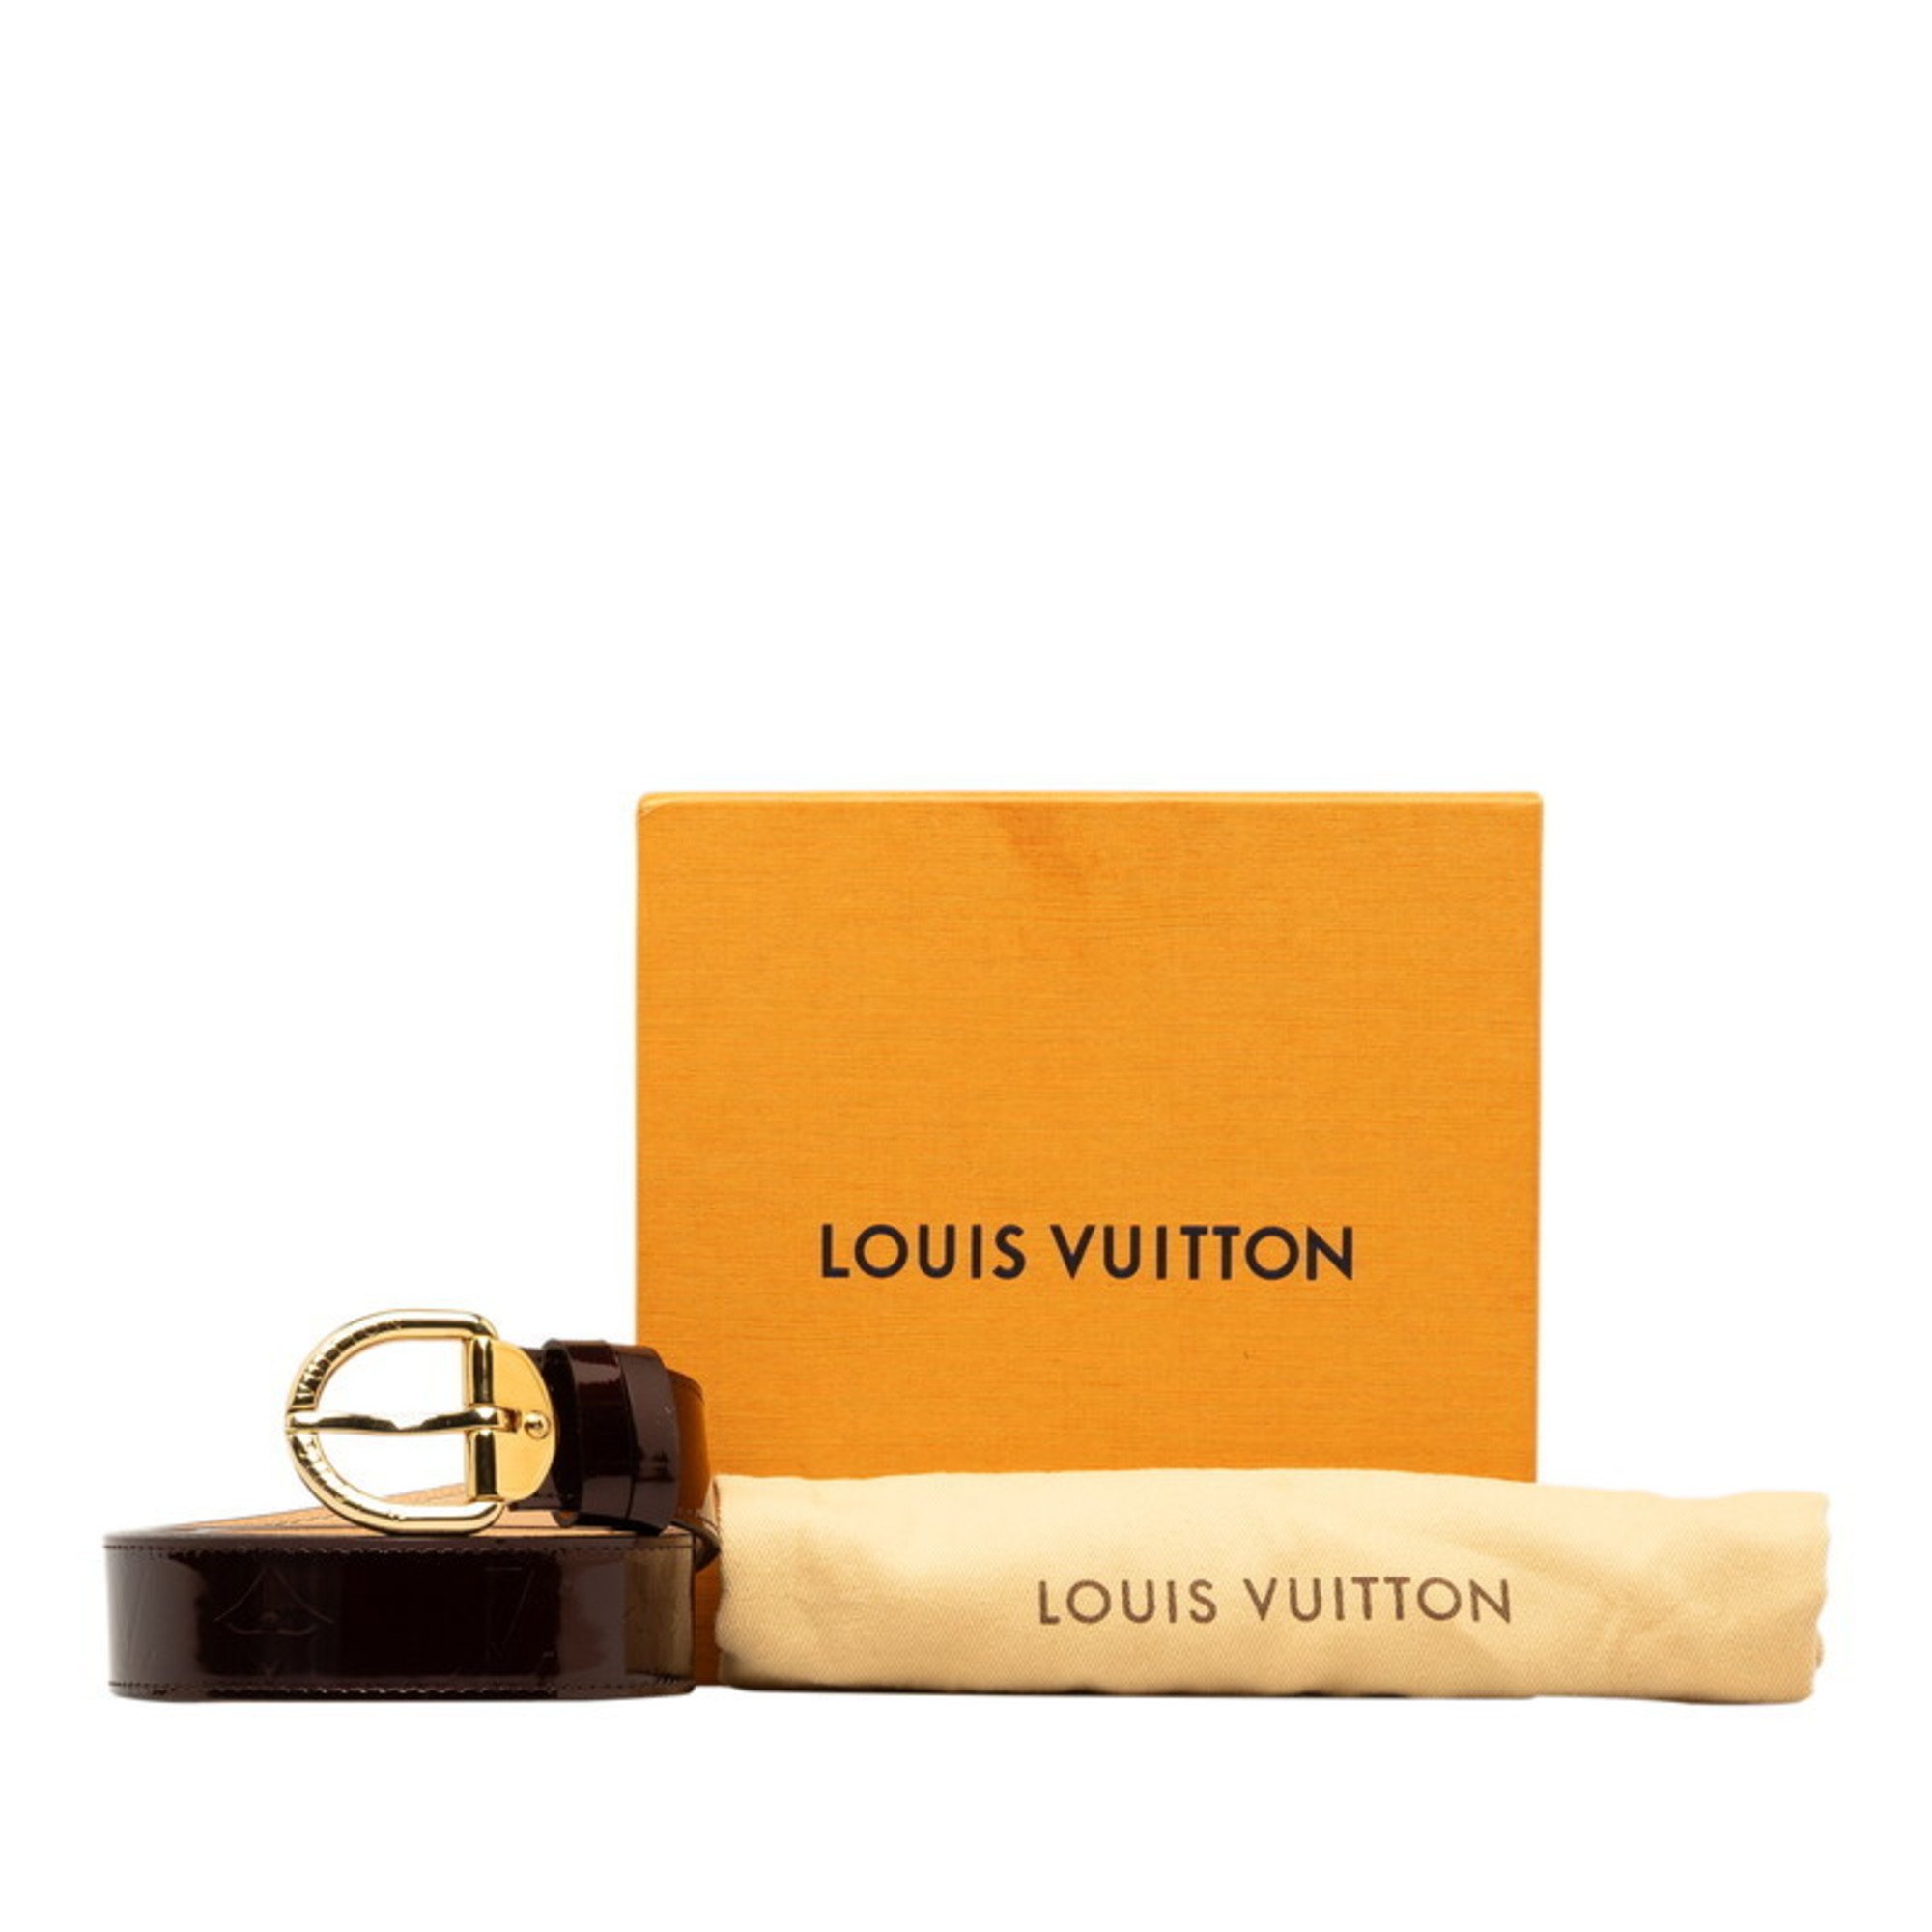 Louis Vuitton Monogram Vernis Santur Belt 80/32 M6979 Amaranth Purple Patent Leather Women's LOUIS VUITTON